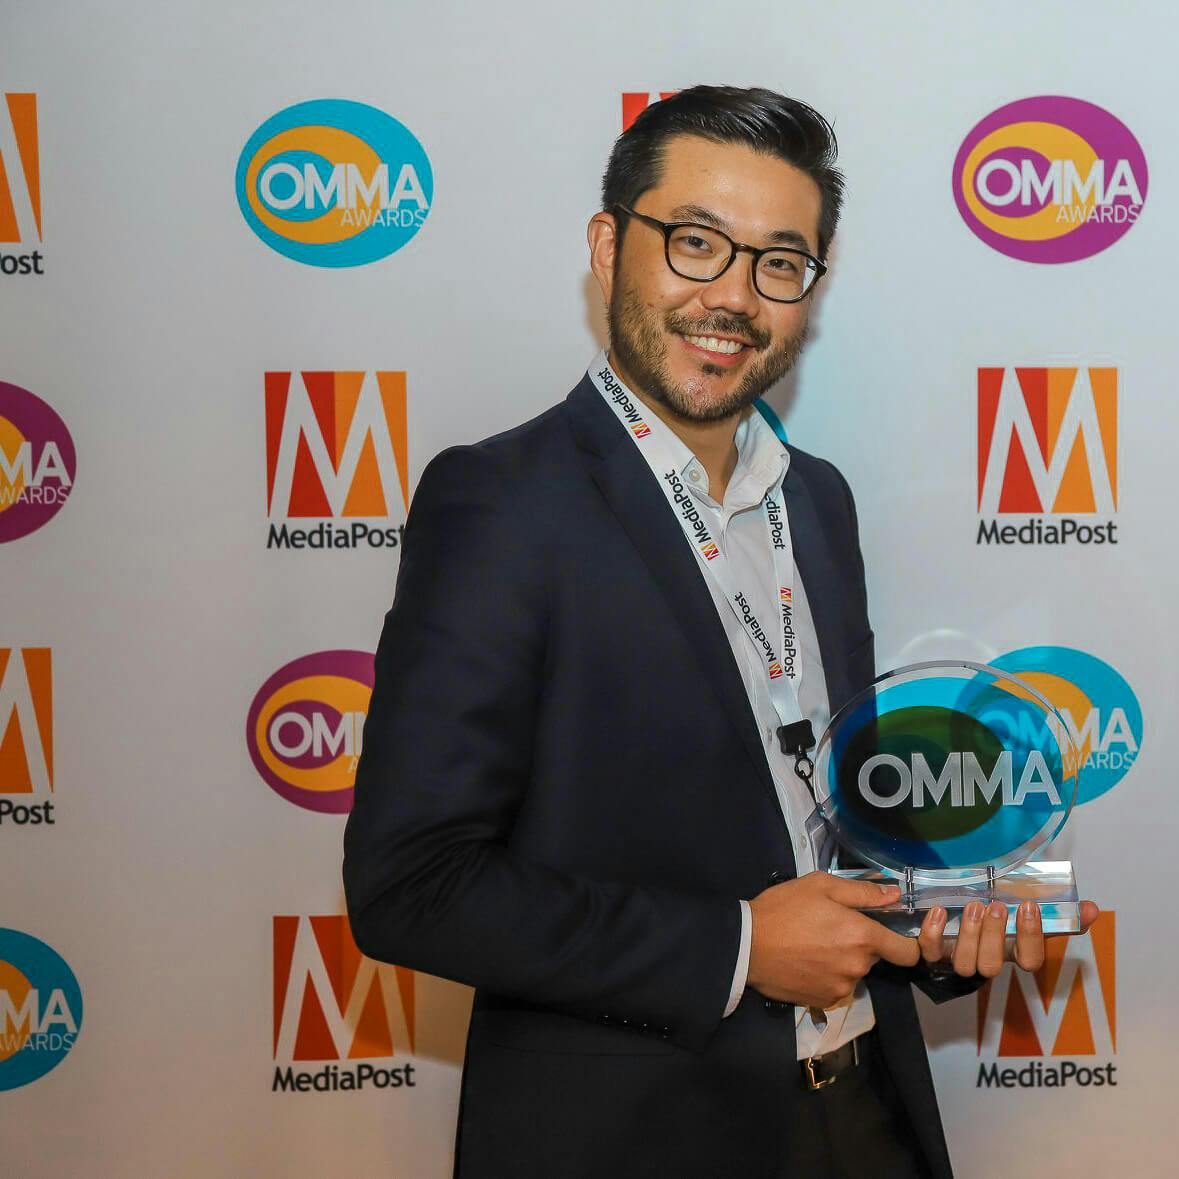 Earl Hwang at the OMMA Awards